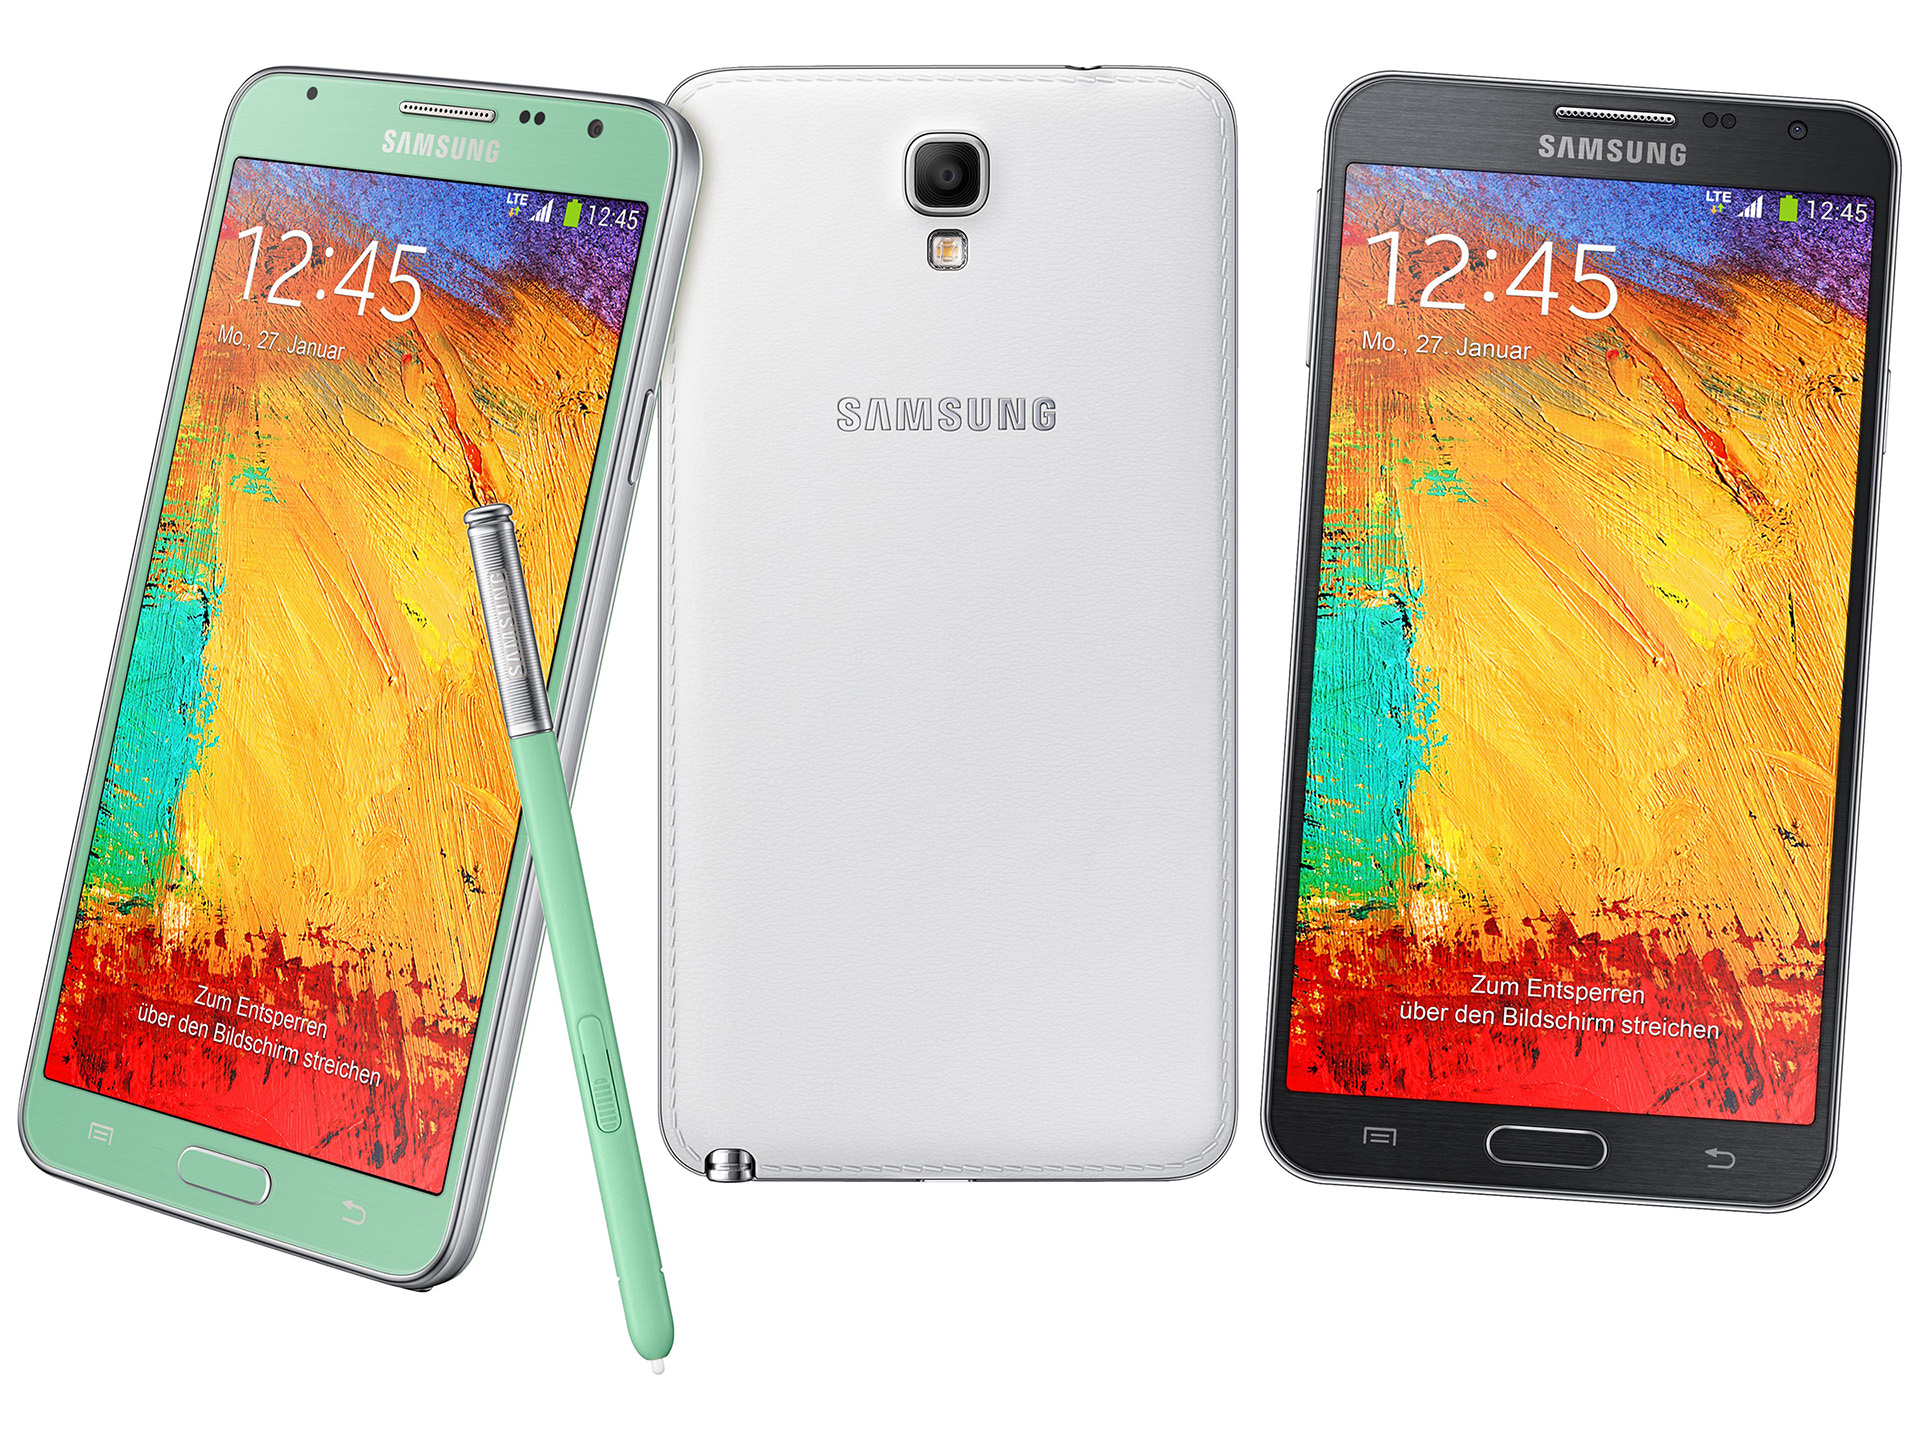 Afspraak Plunderen Ambtenaren Samsung Galaxy Note 3 Neo N7505 - Notebookcheck.nl